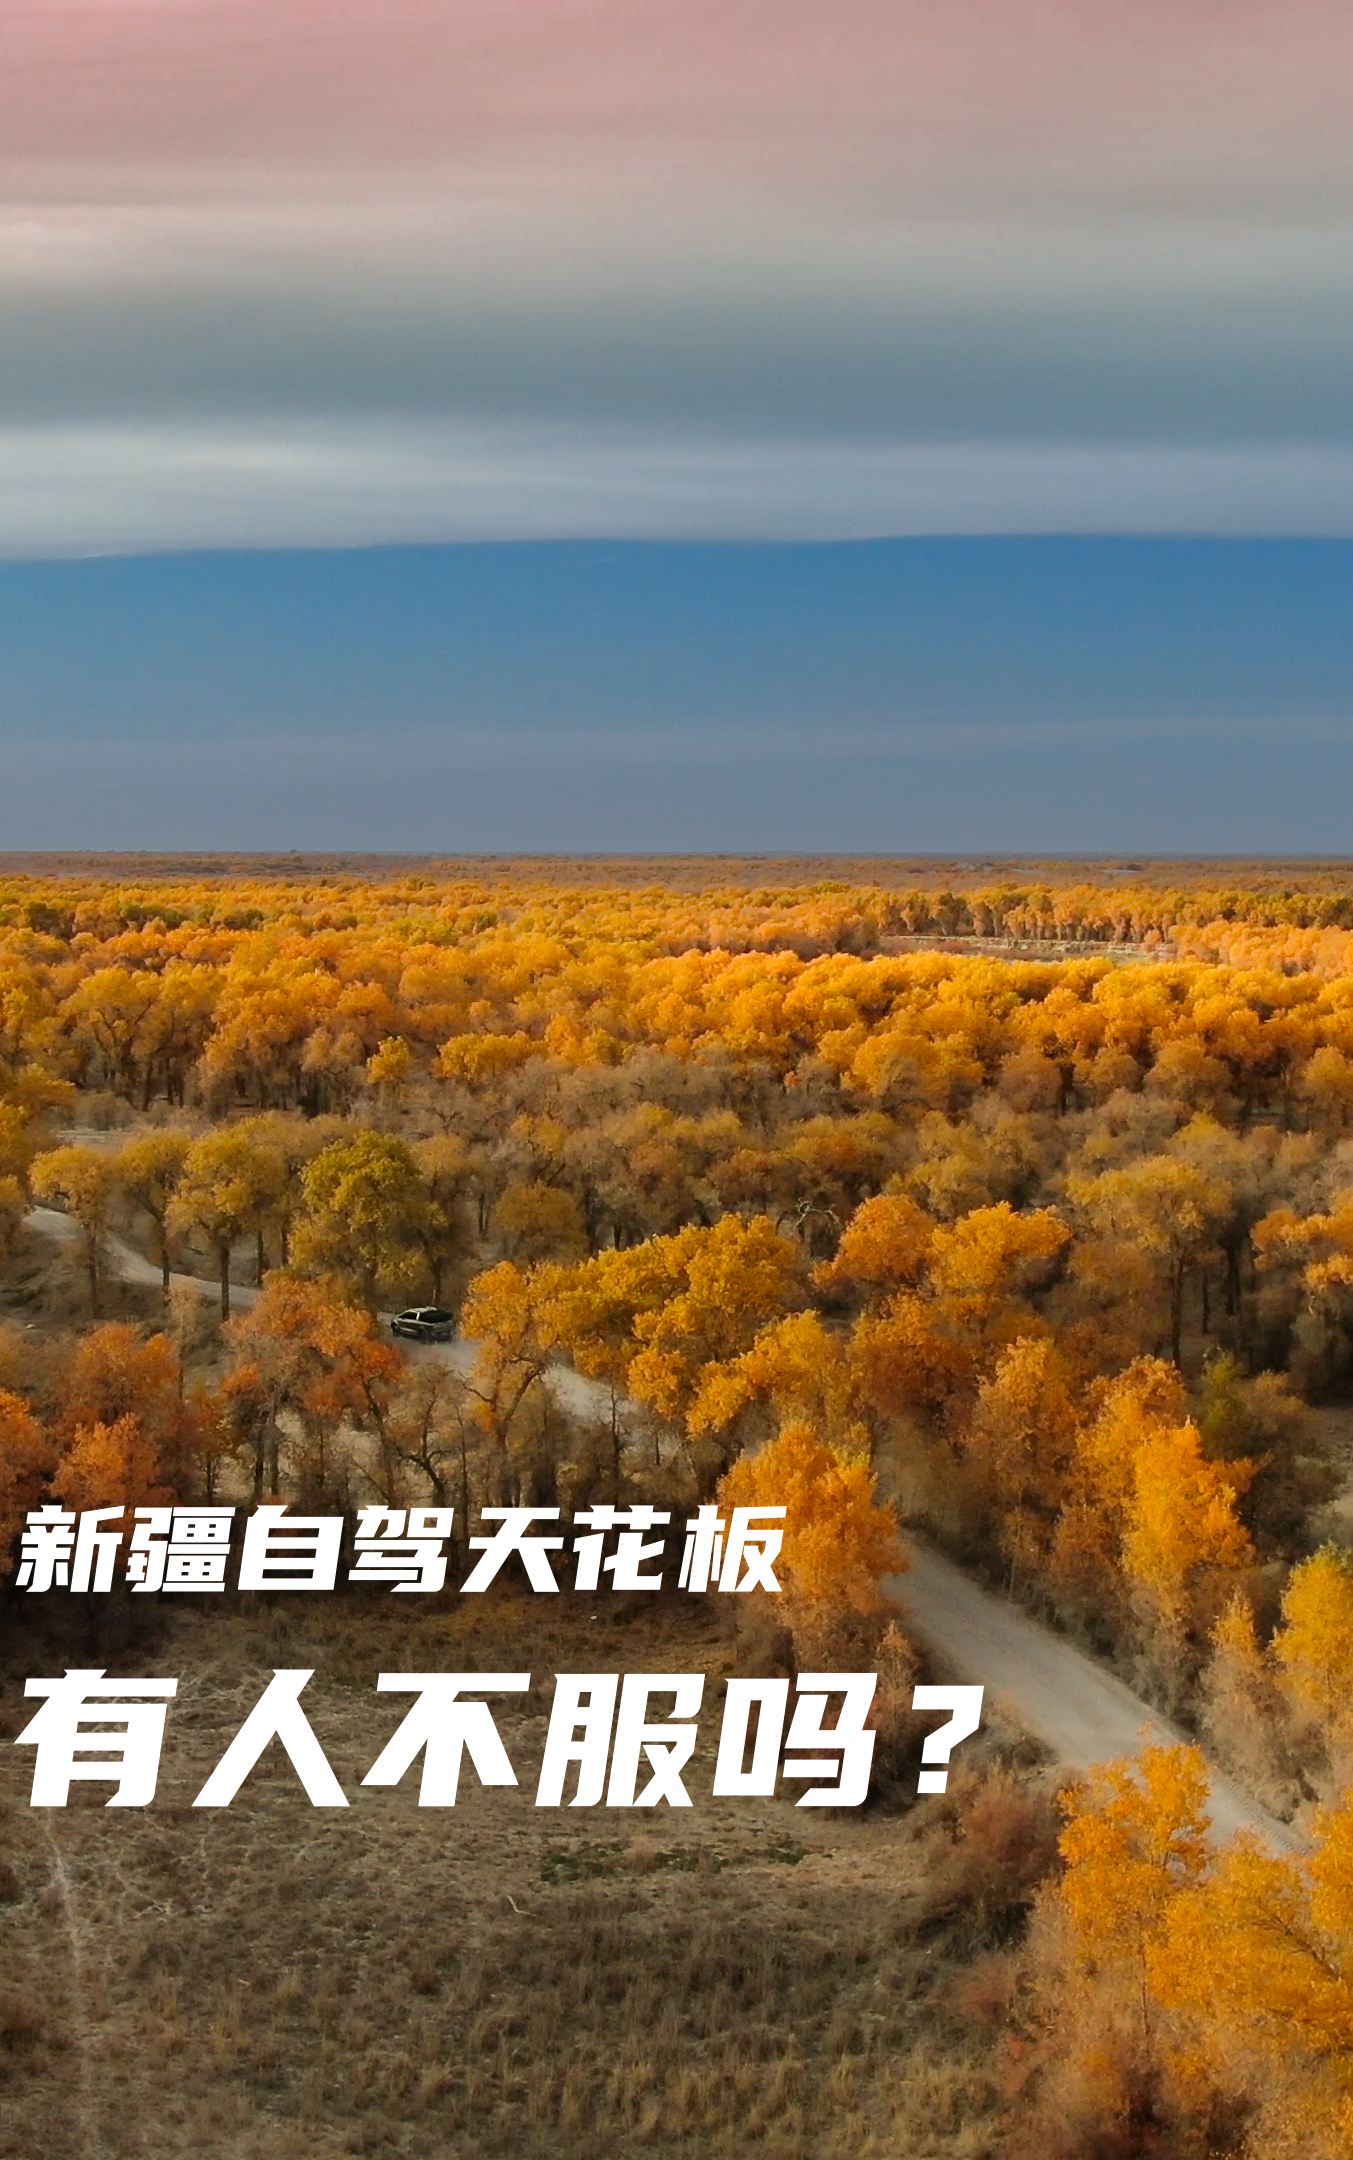 一个视频介绍新疆自驾天花板